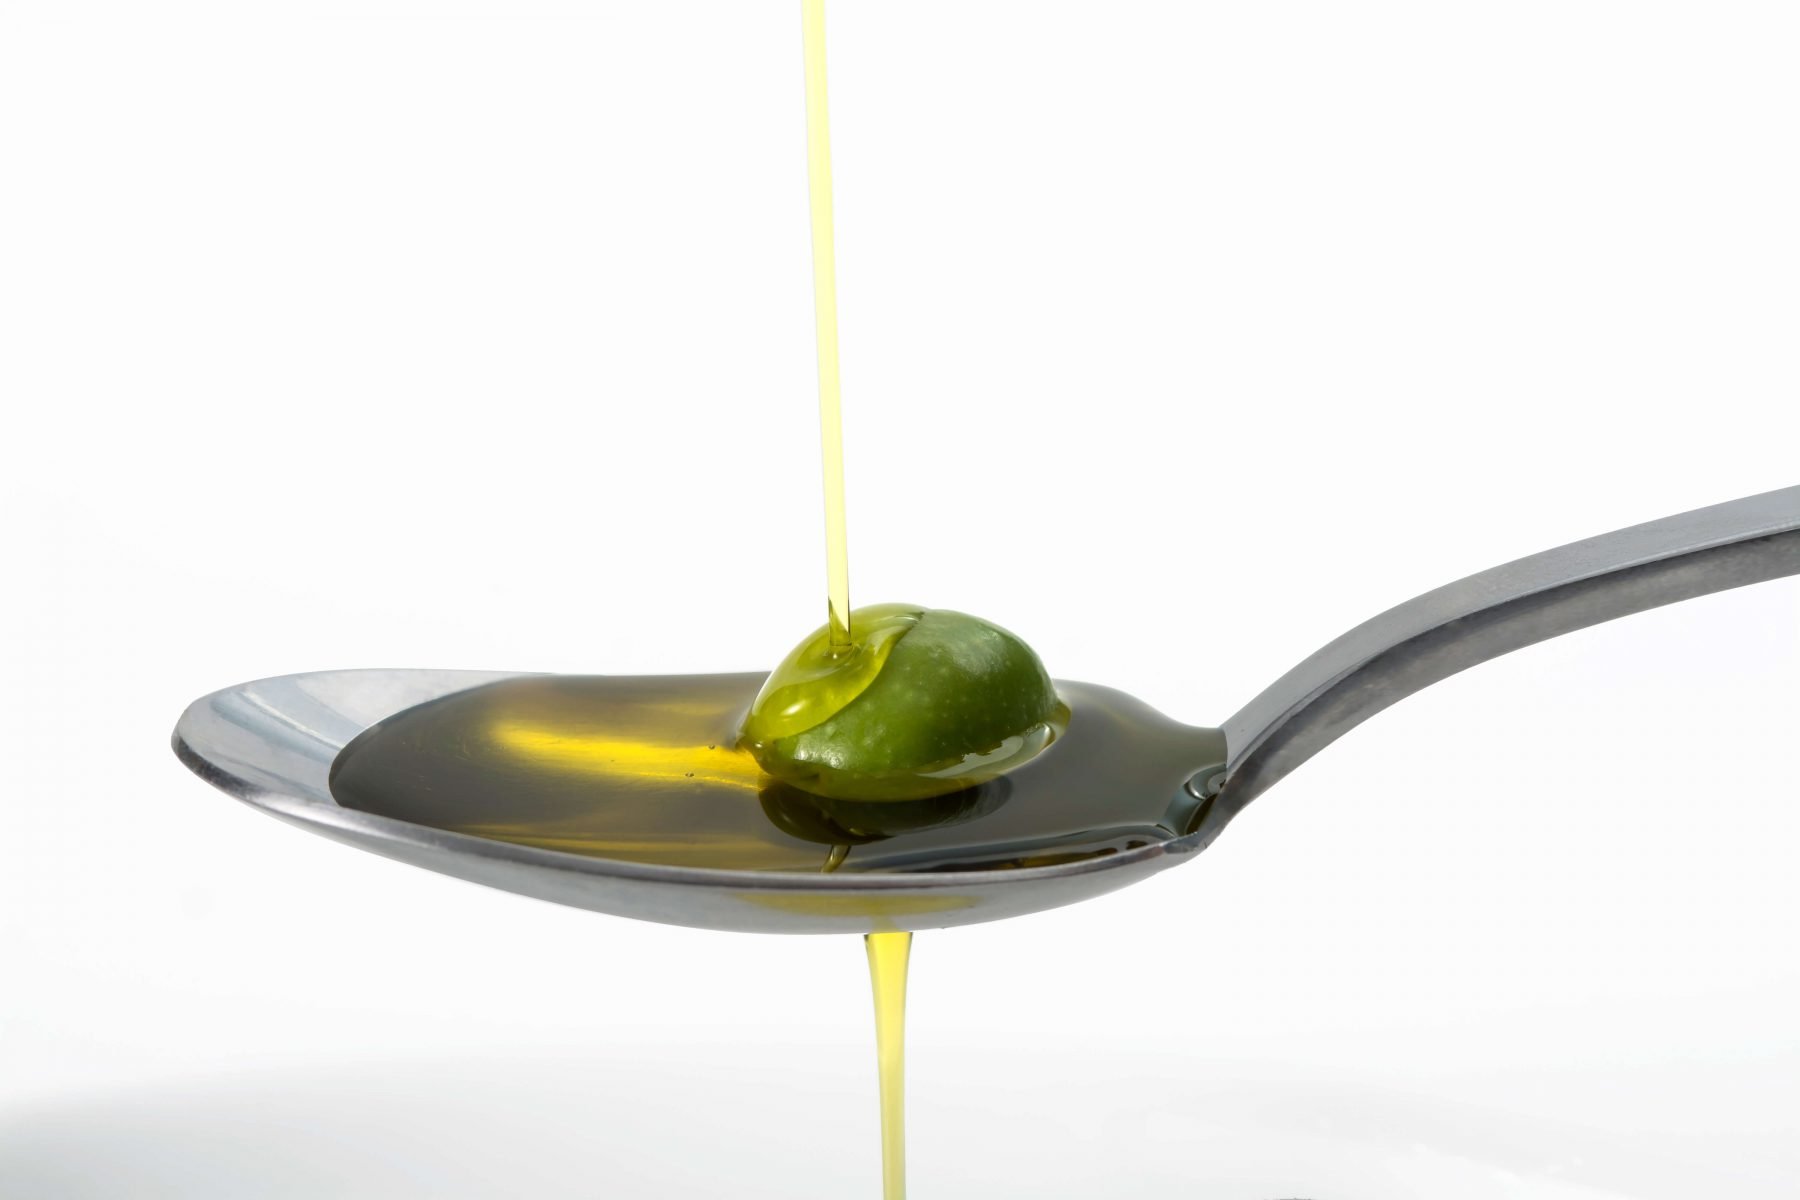 aceite de oliva propiedades 11aceite de oliva propiedades 11